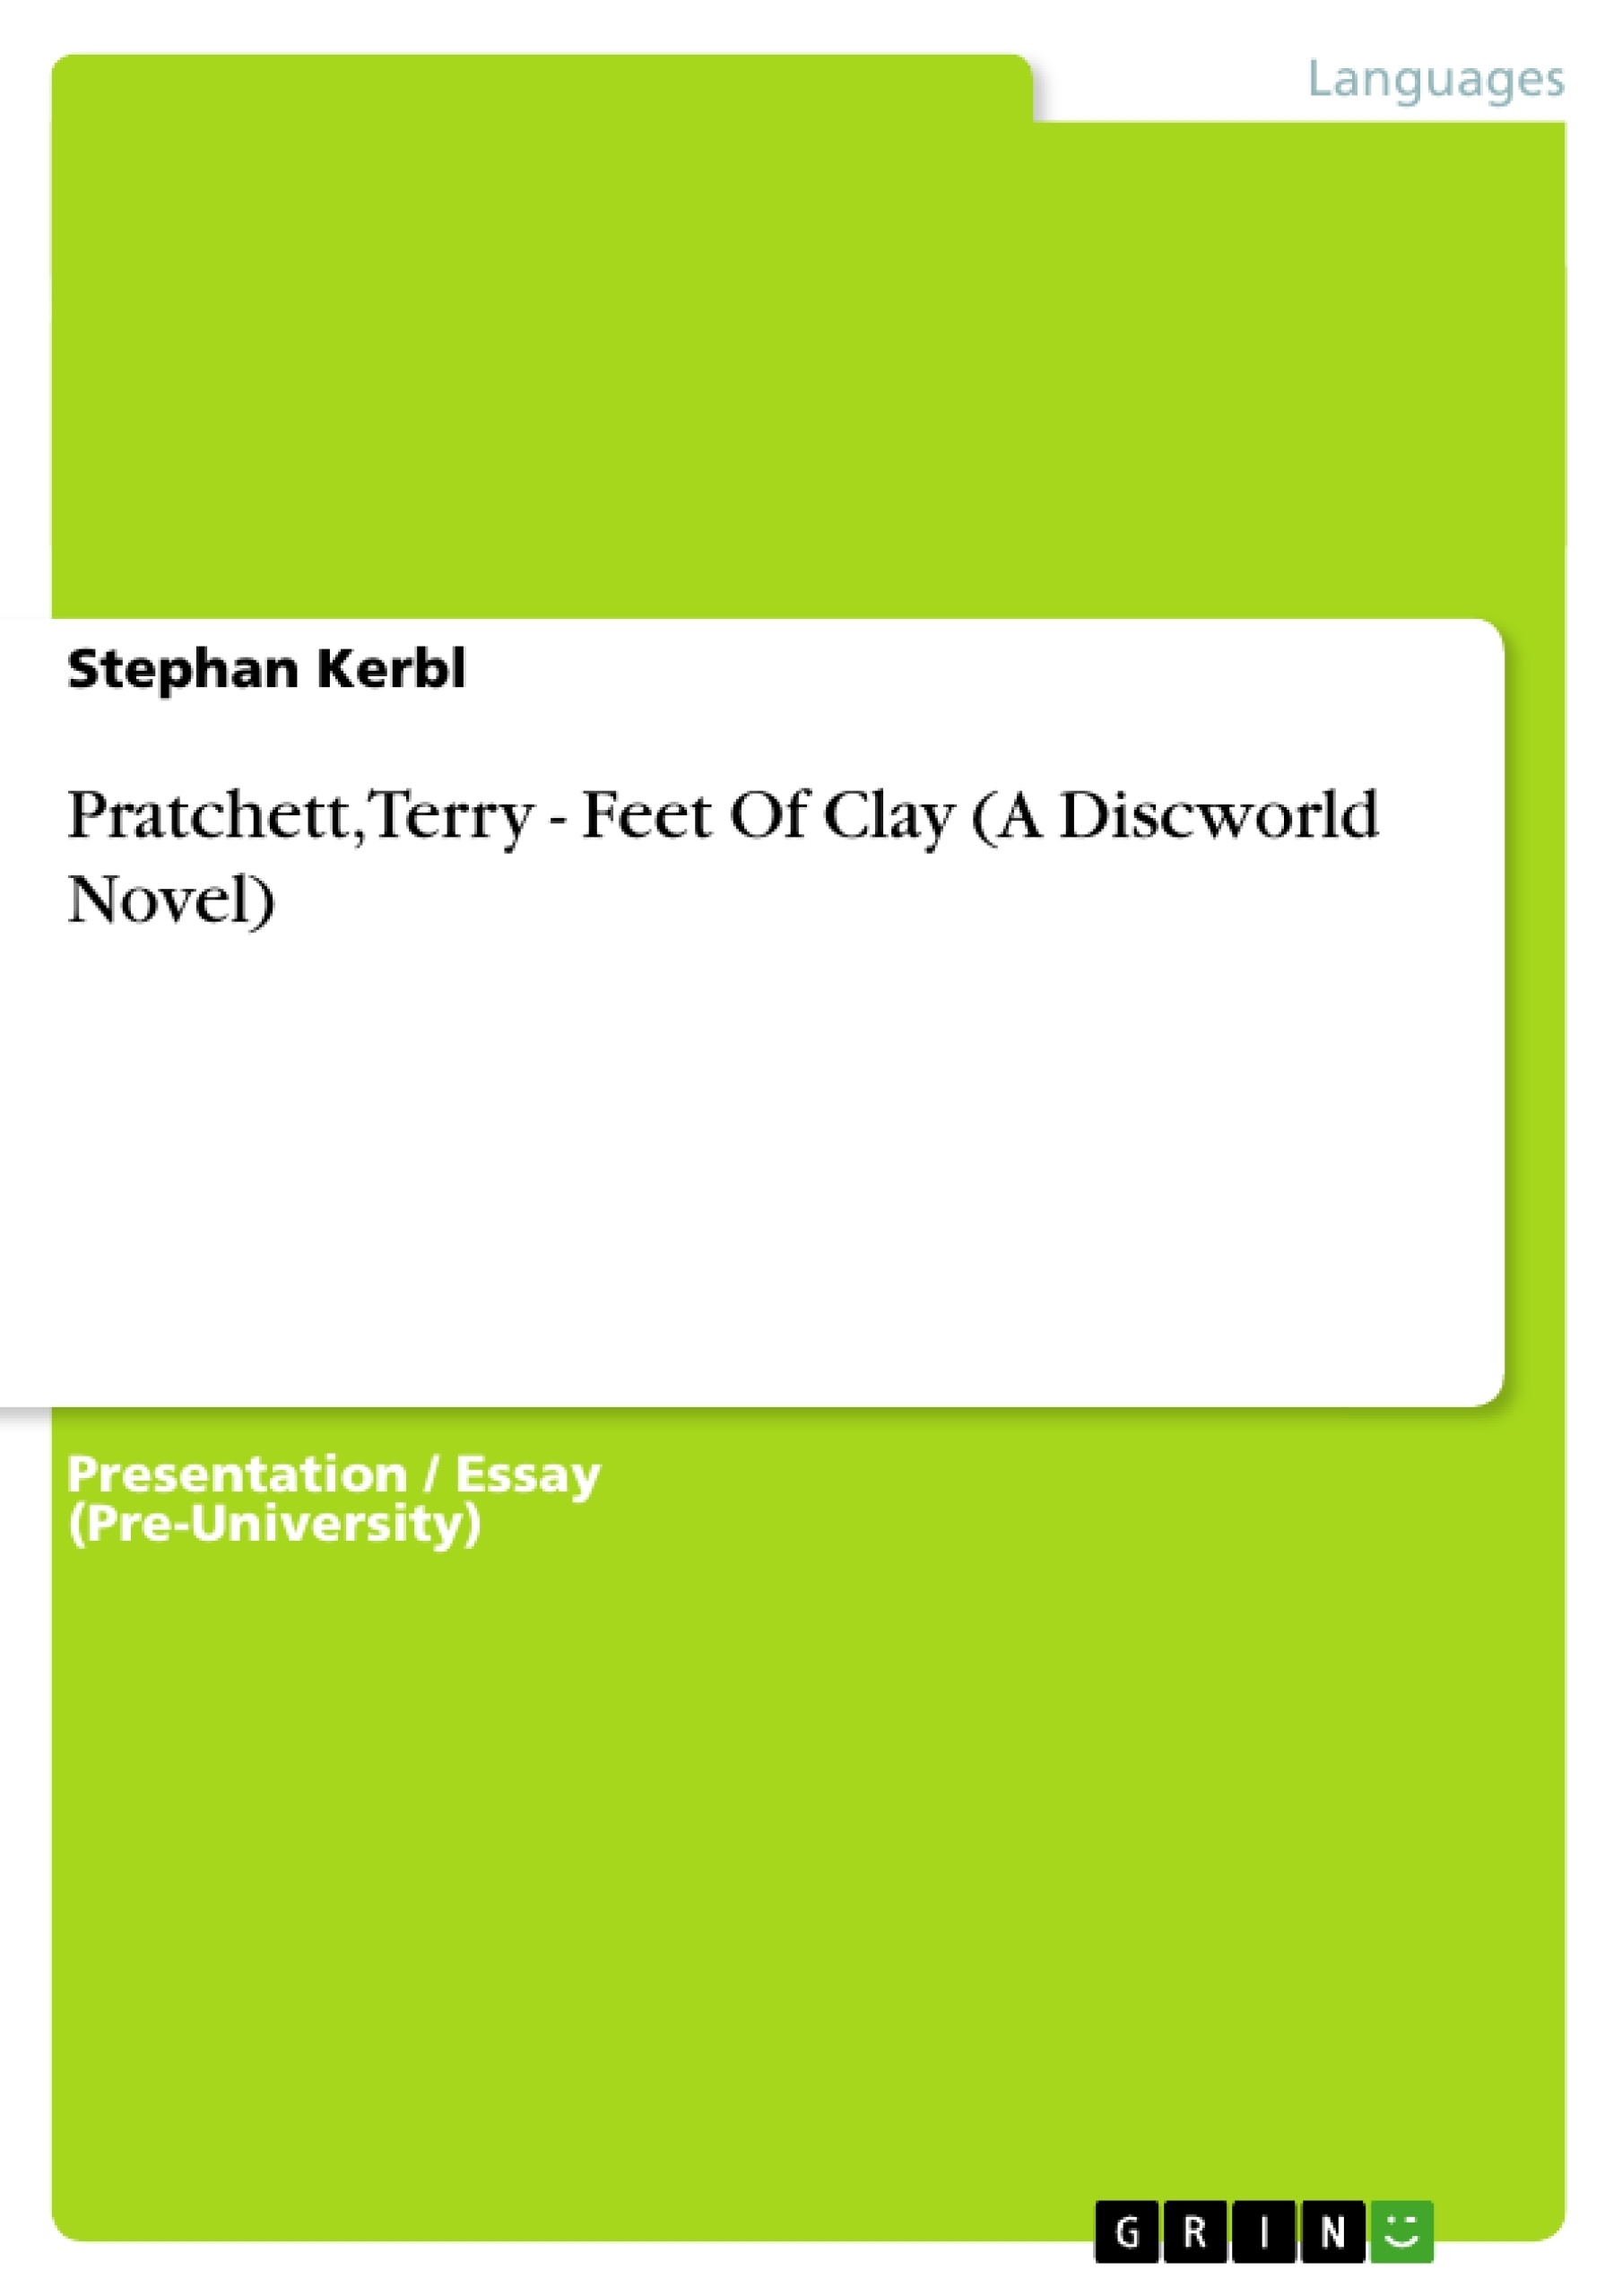 Titre: Pratchett, Terry - Feet Of Clay (A Discworld Novel)